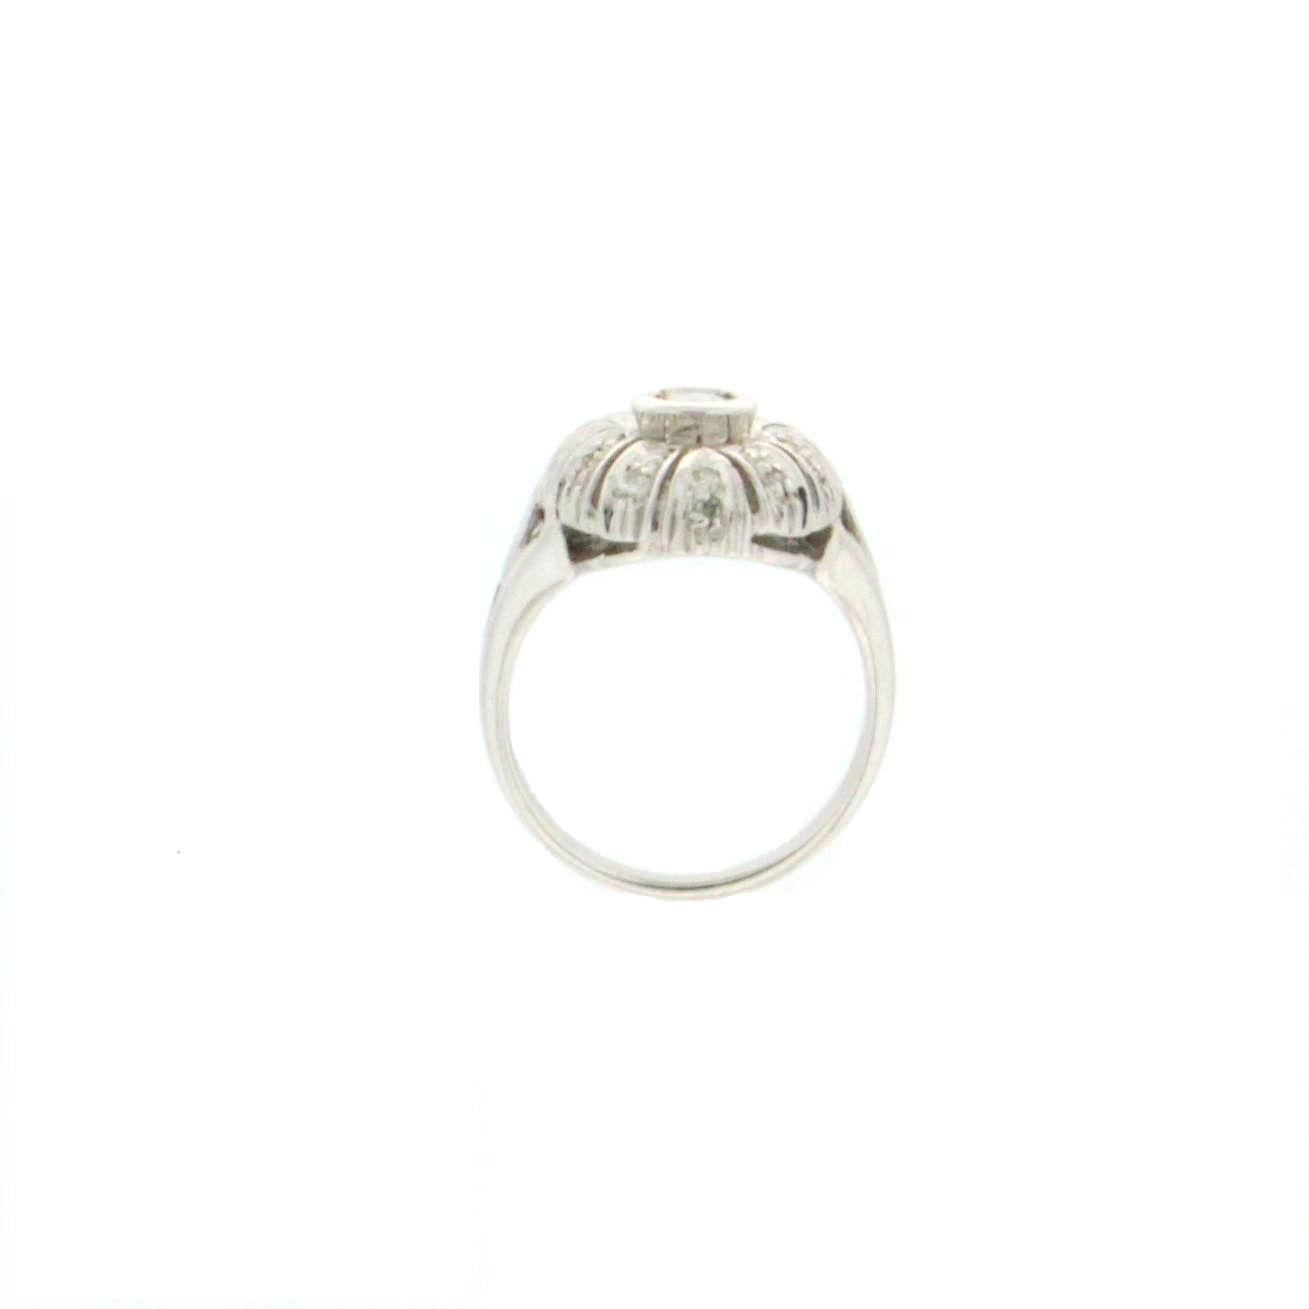 Artisan Handcraft Diamonds 18 Karat White Gold Engagement Ring